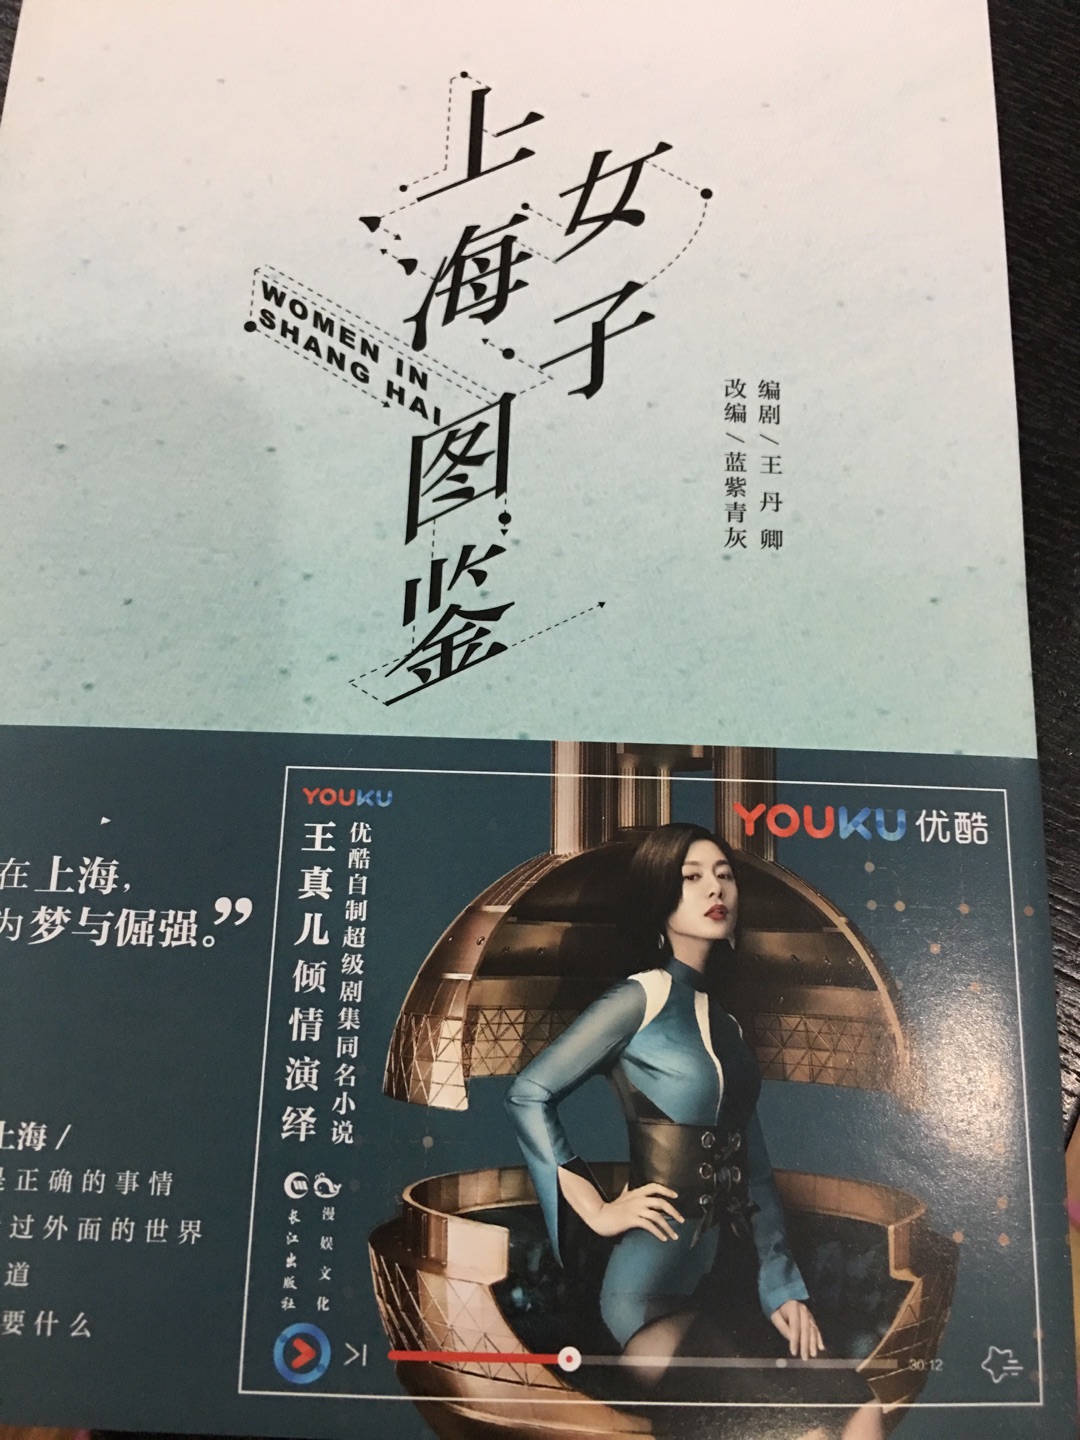 书是正版，看过北京女子图鉴后在来买的这本，应该也不会让我失望